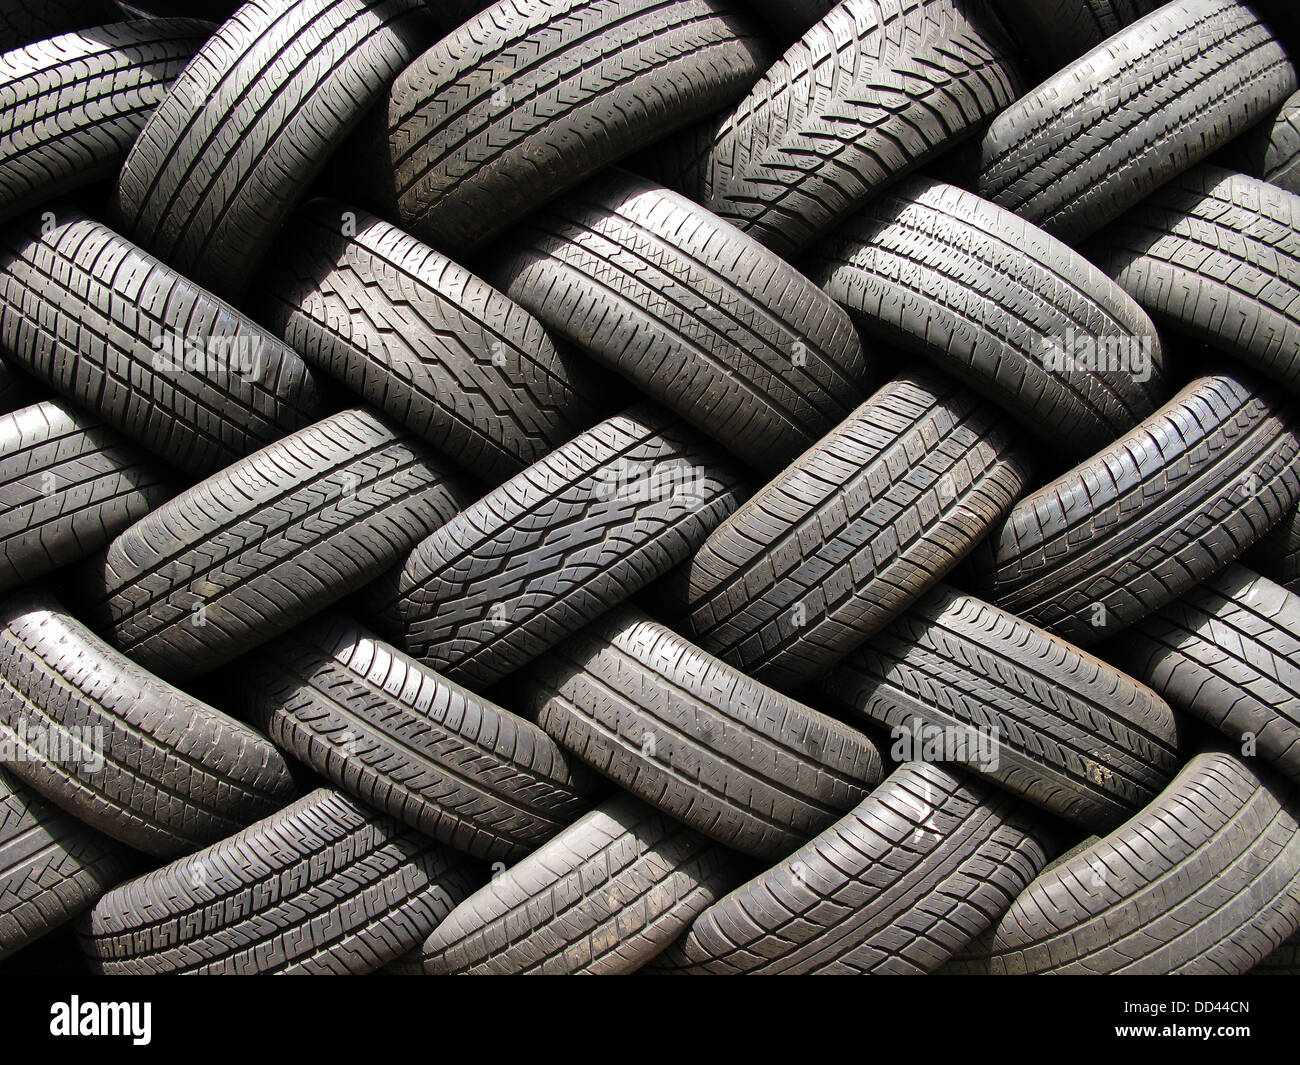 Una gran pila de neumáticos de coche automotor usado. Foto de stock